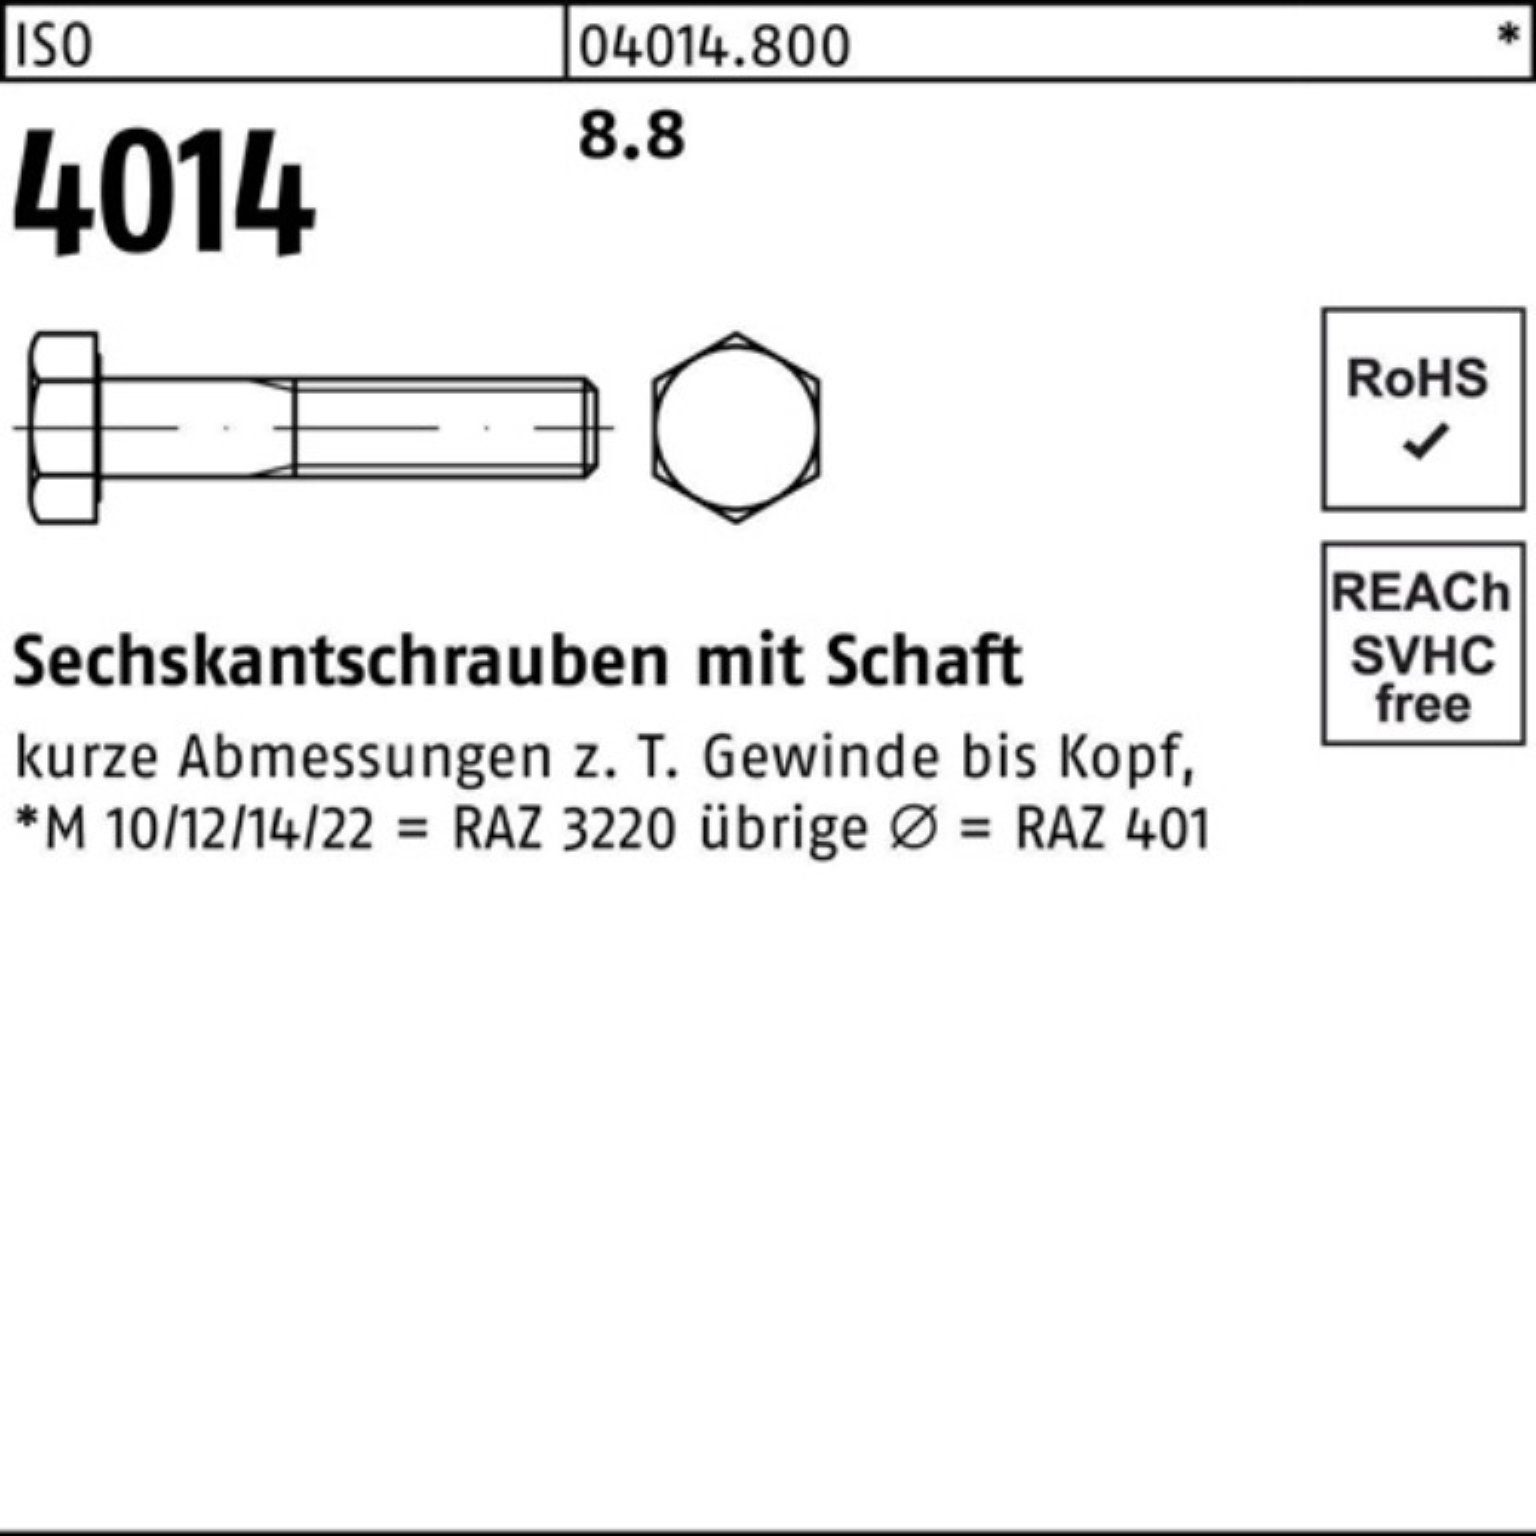 Bufab Sechskantschraube 100er ISO 25 8.8 Stück Schaft IS Sechskantschraube M14x 4014 160 Pack